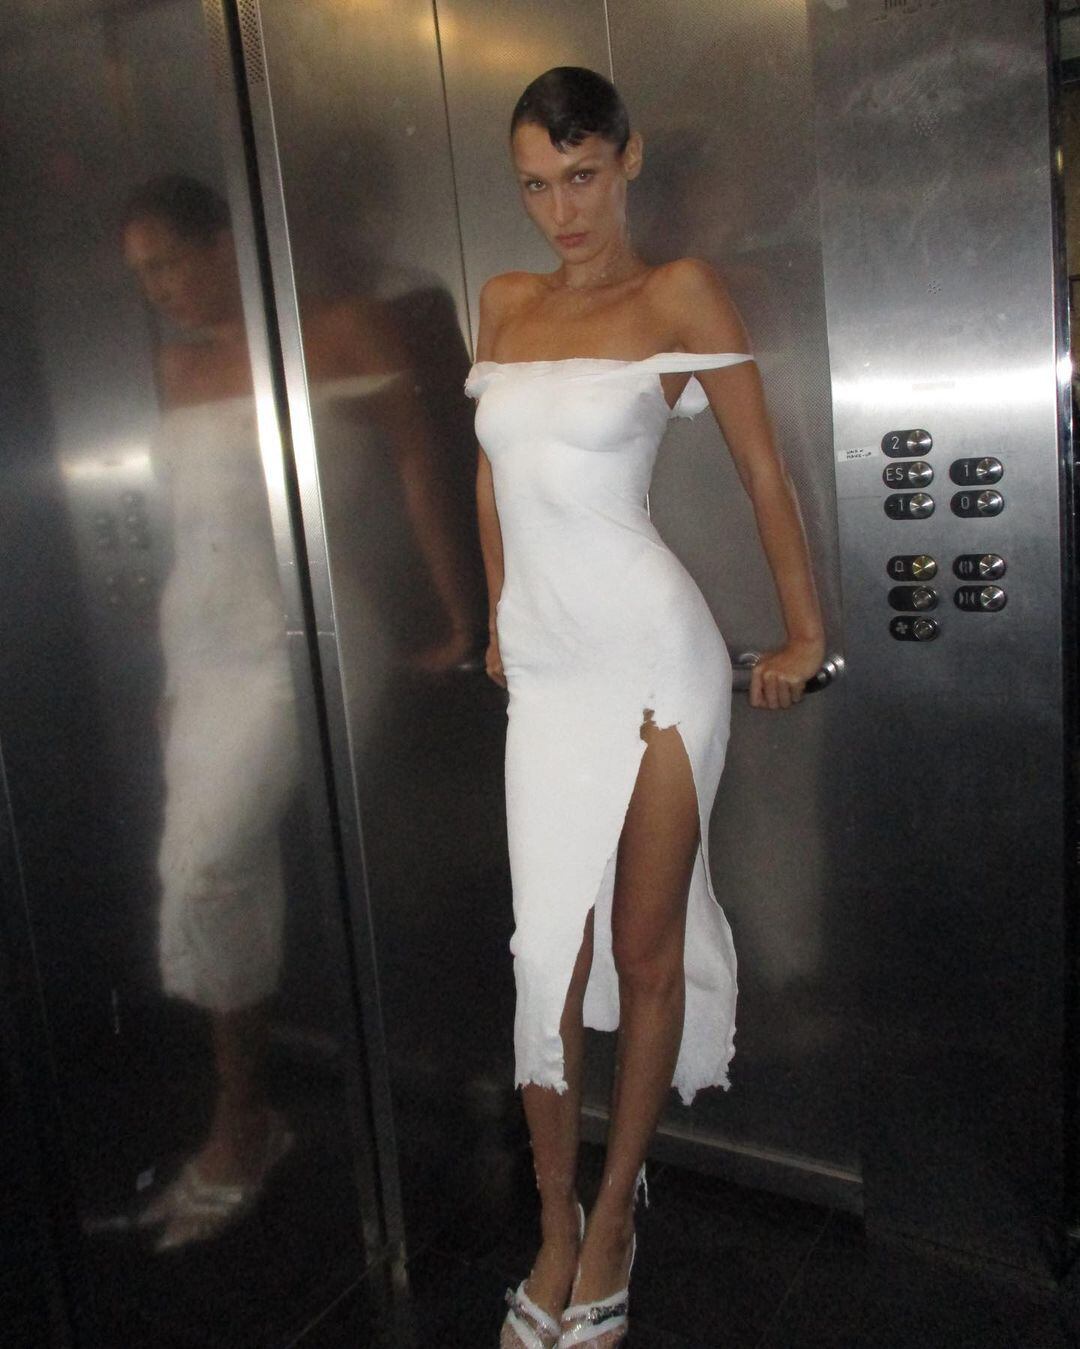 La modelo Bella Hadid fotografiada con el vestido de Coperni en un ascensor tras el desfile.